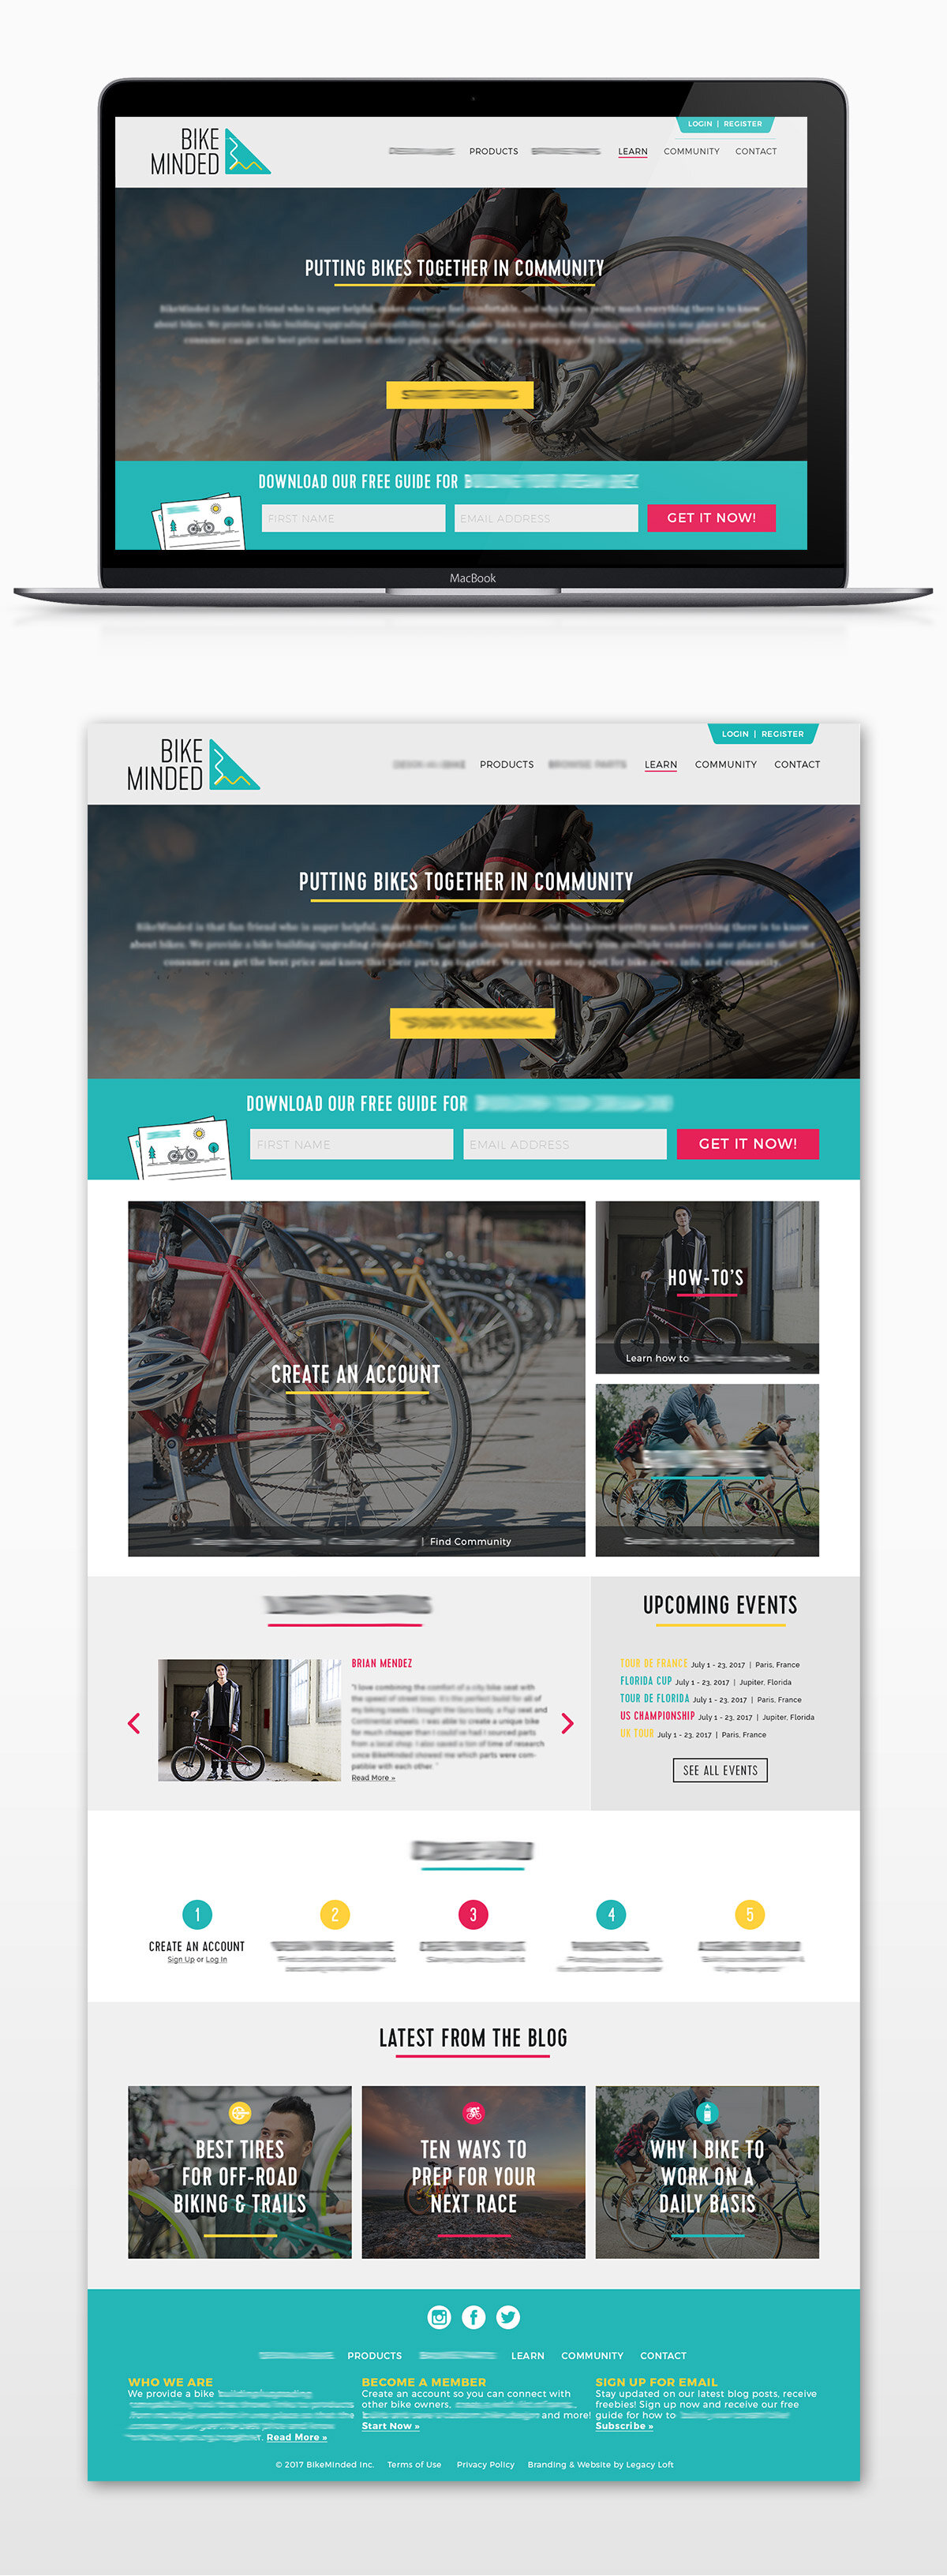 BikeMinded Website Design — Legacy Loft